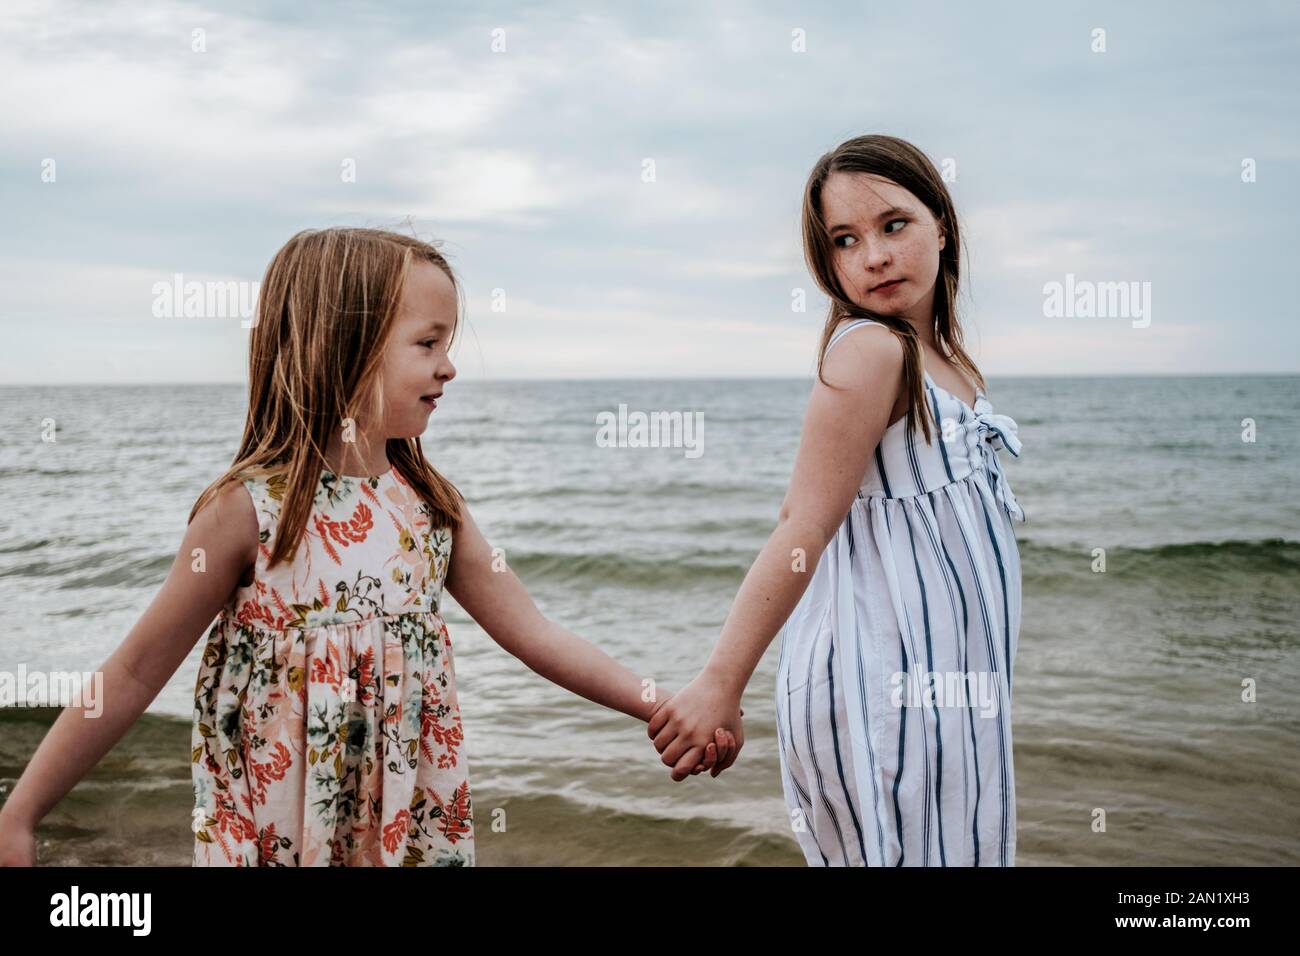 Porträt von Schwestern, die die Hände halten und in der Nähe eines Sees spazieren gehen Stockfoto